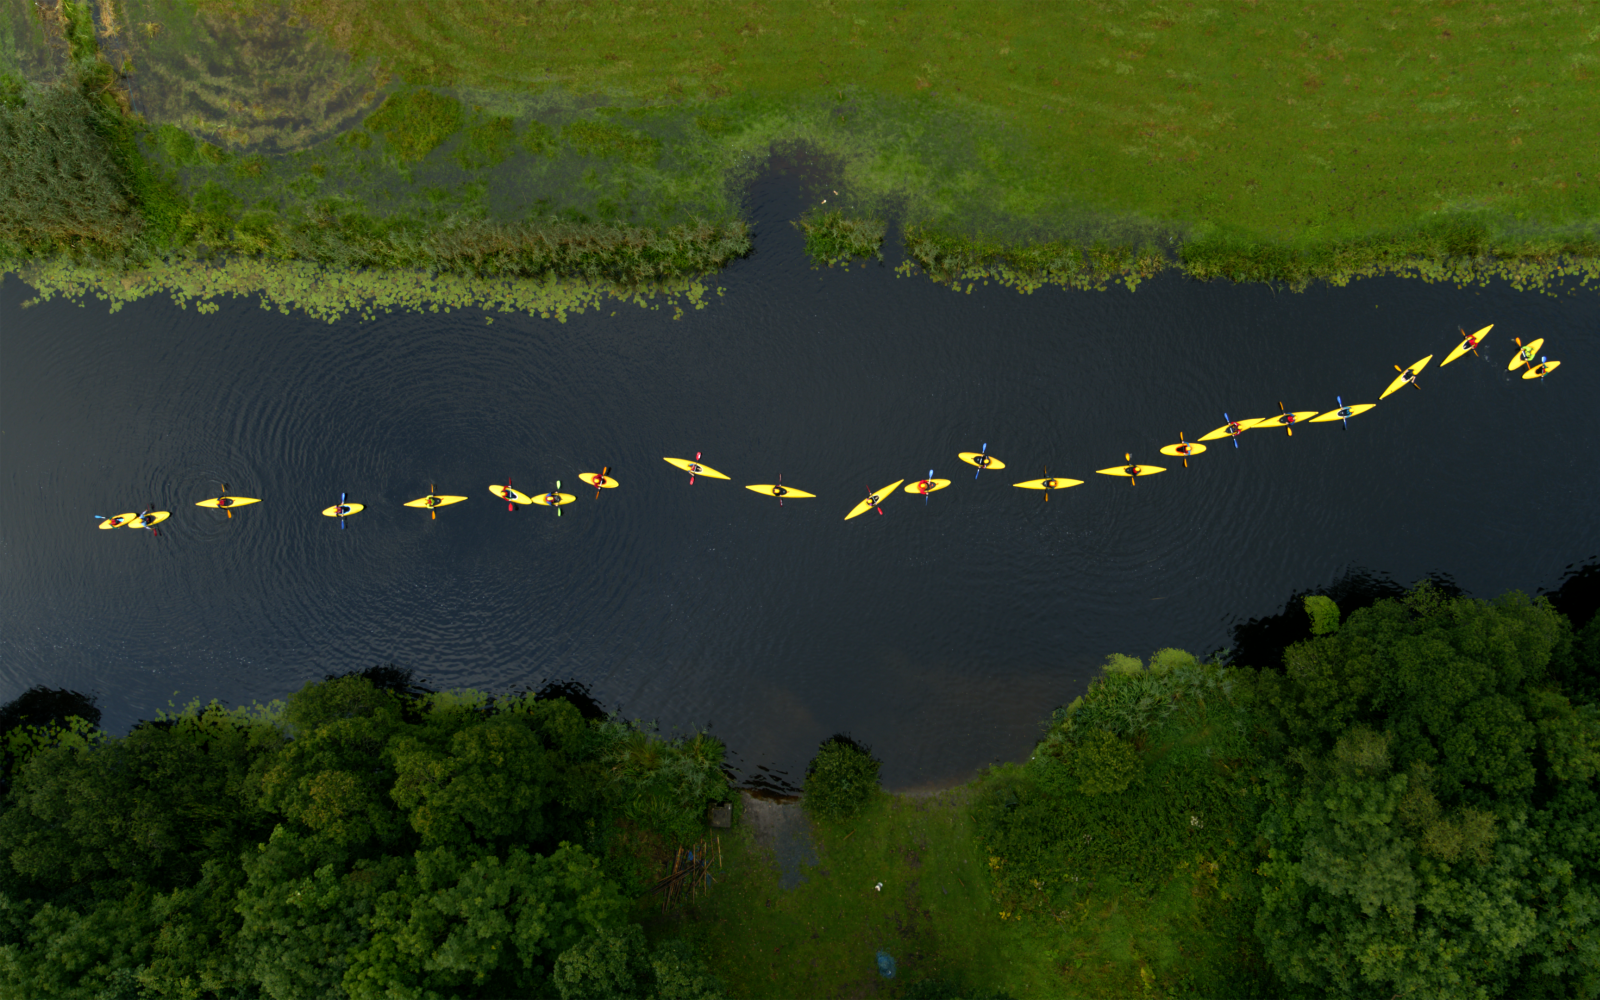 Zu sehen ist eine grüne Landschaft durch die sich ein Fluss schlängelt. Das Bild zeigt aus der Vogelperspektive, wie neun Menschen in gelben Regenjacken und gelben Kanus, den Fluss entlangpaddeln.